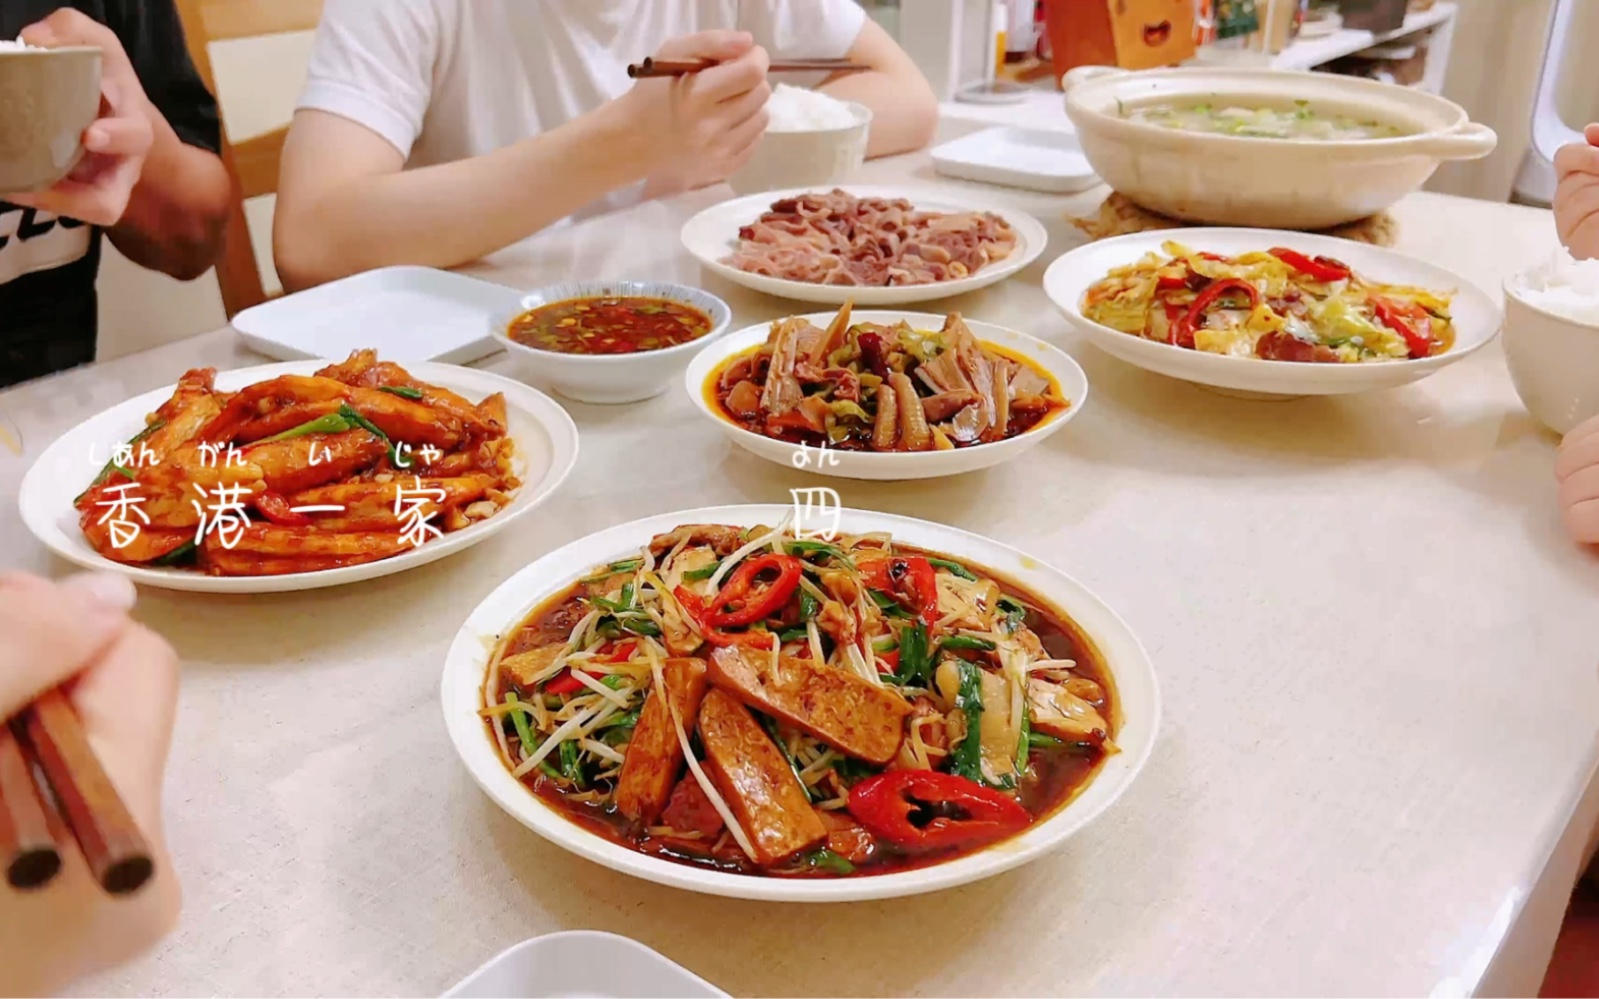 记录香港全职妈妈的一天/家常菜分享清汤牛腩|芥末大虾|韭菜豆芽炒香千丨干锅包菜|椒麻大杂烩丨萝卜牛腩汤